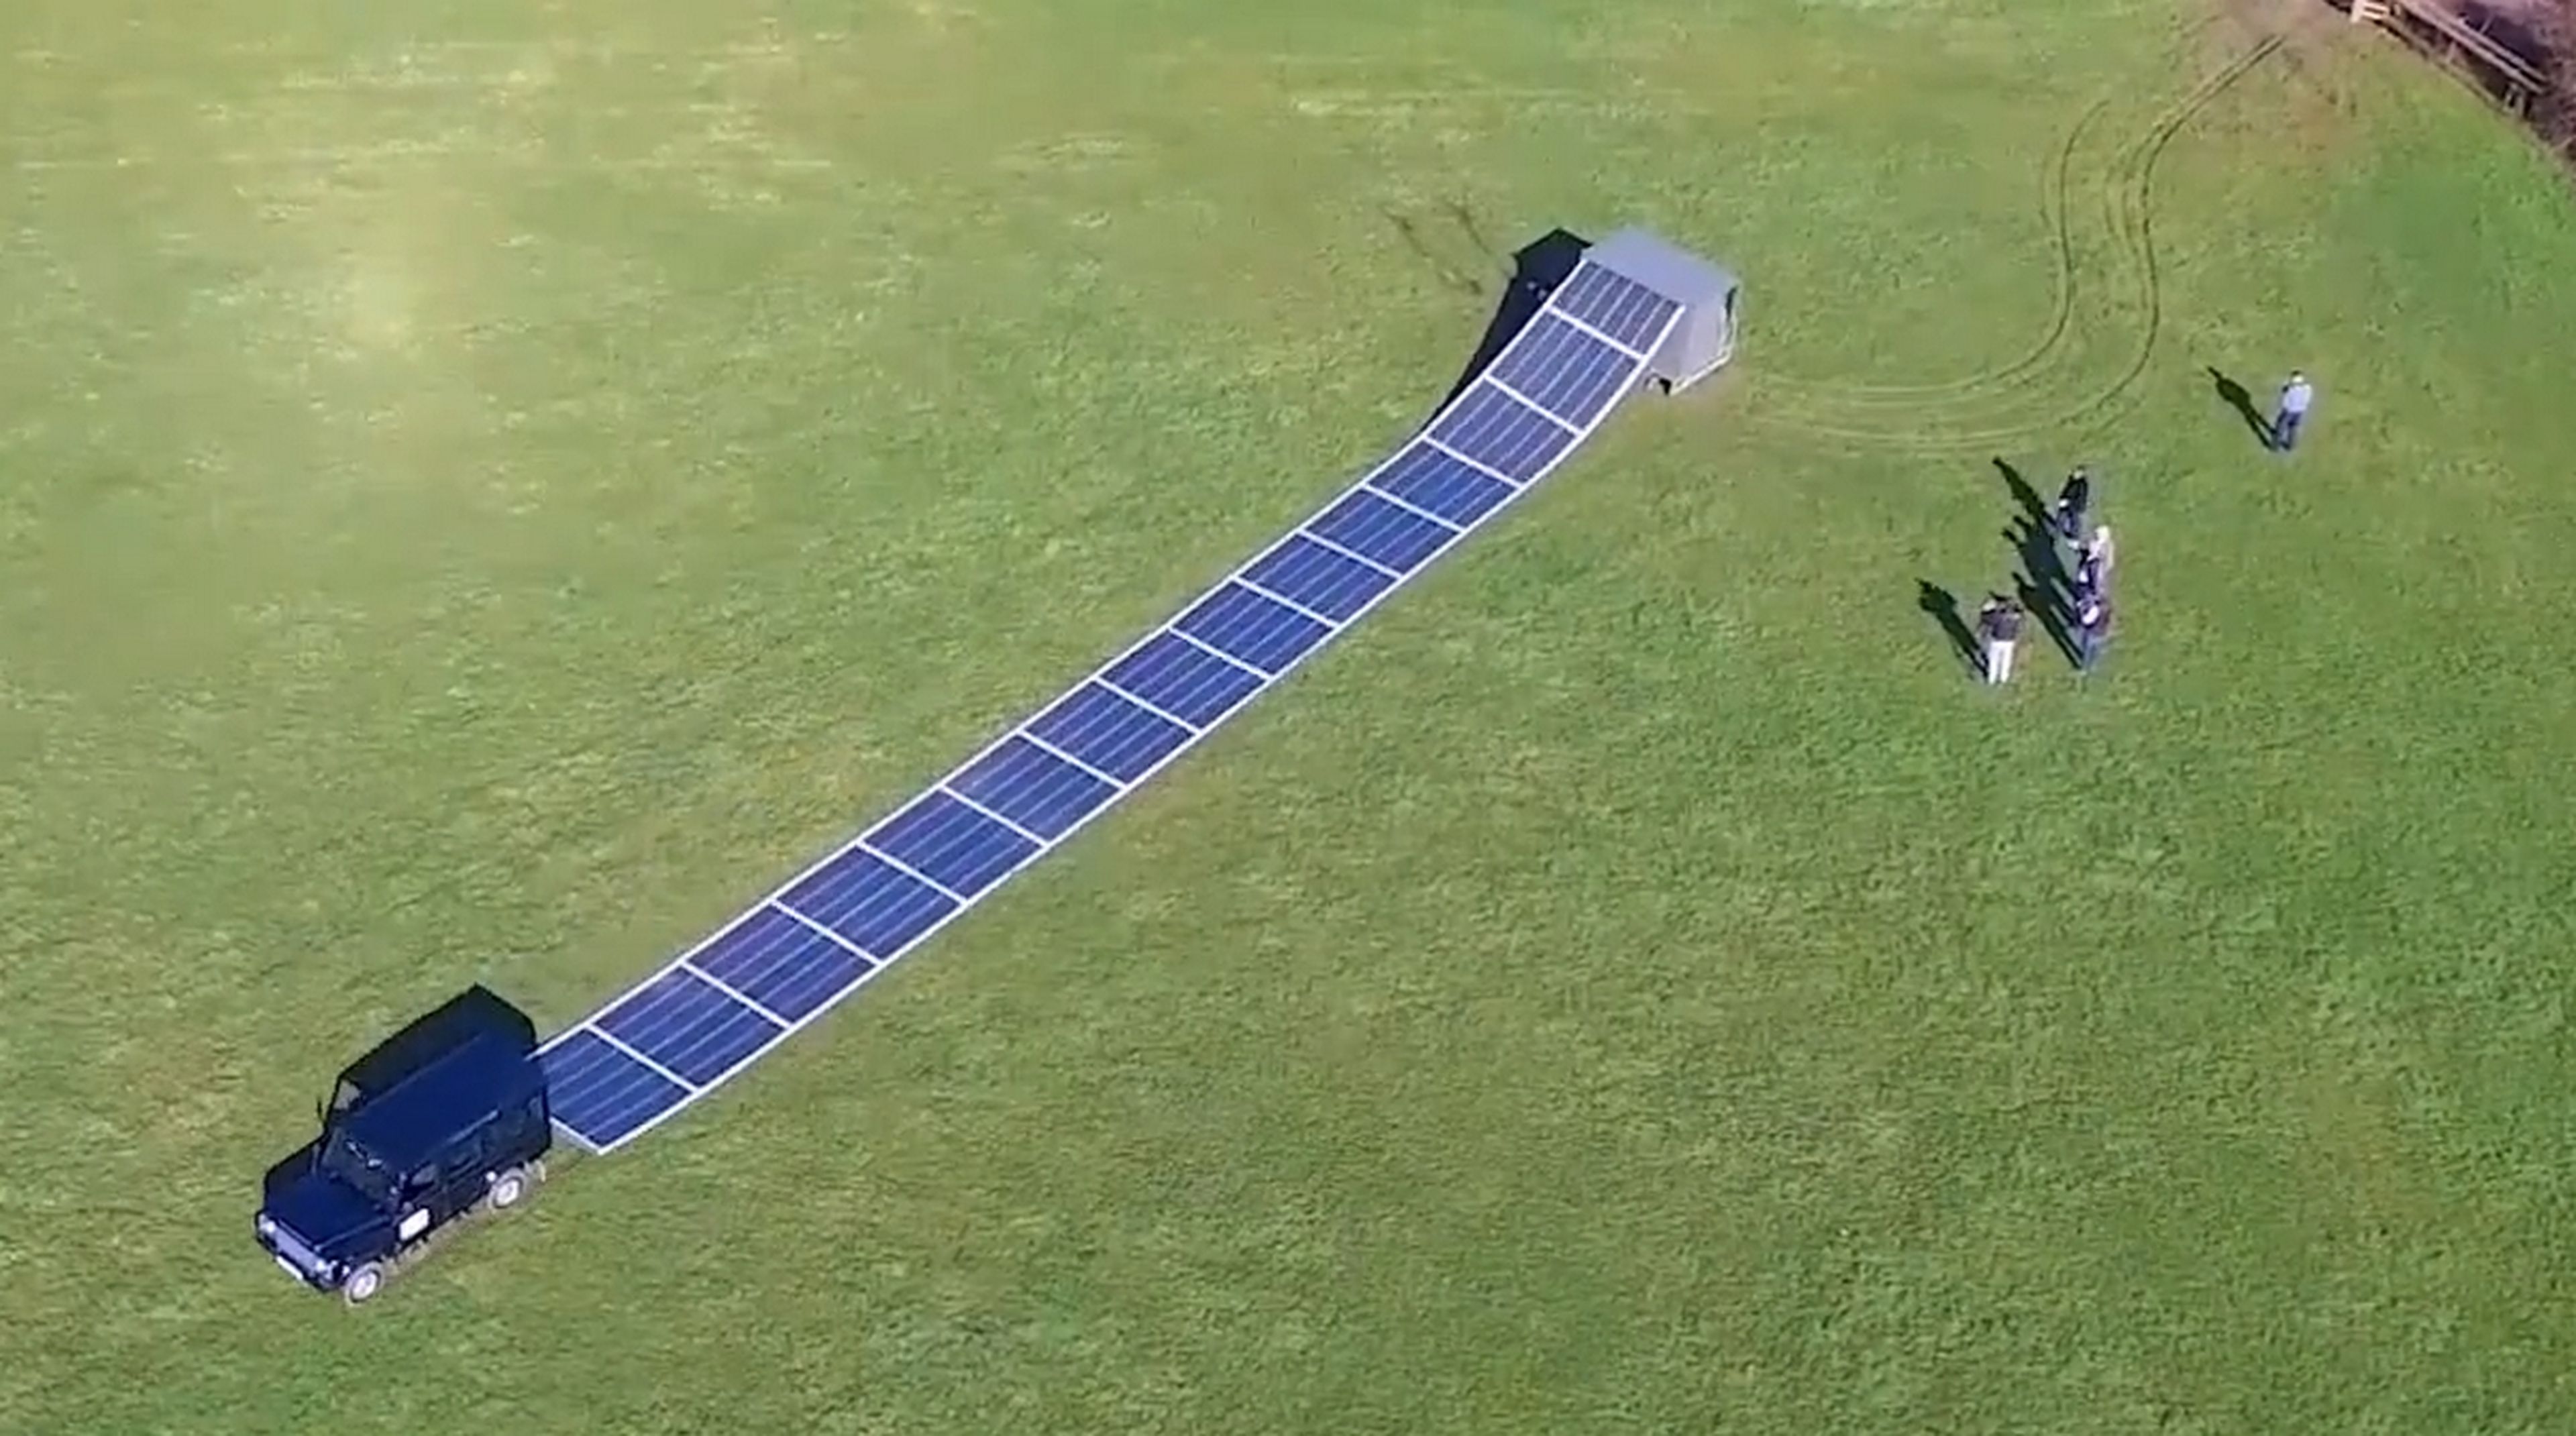 Estos paneles solares enrollables permiten desplegar una central solar en cuestión de minutos